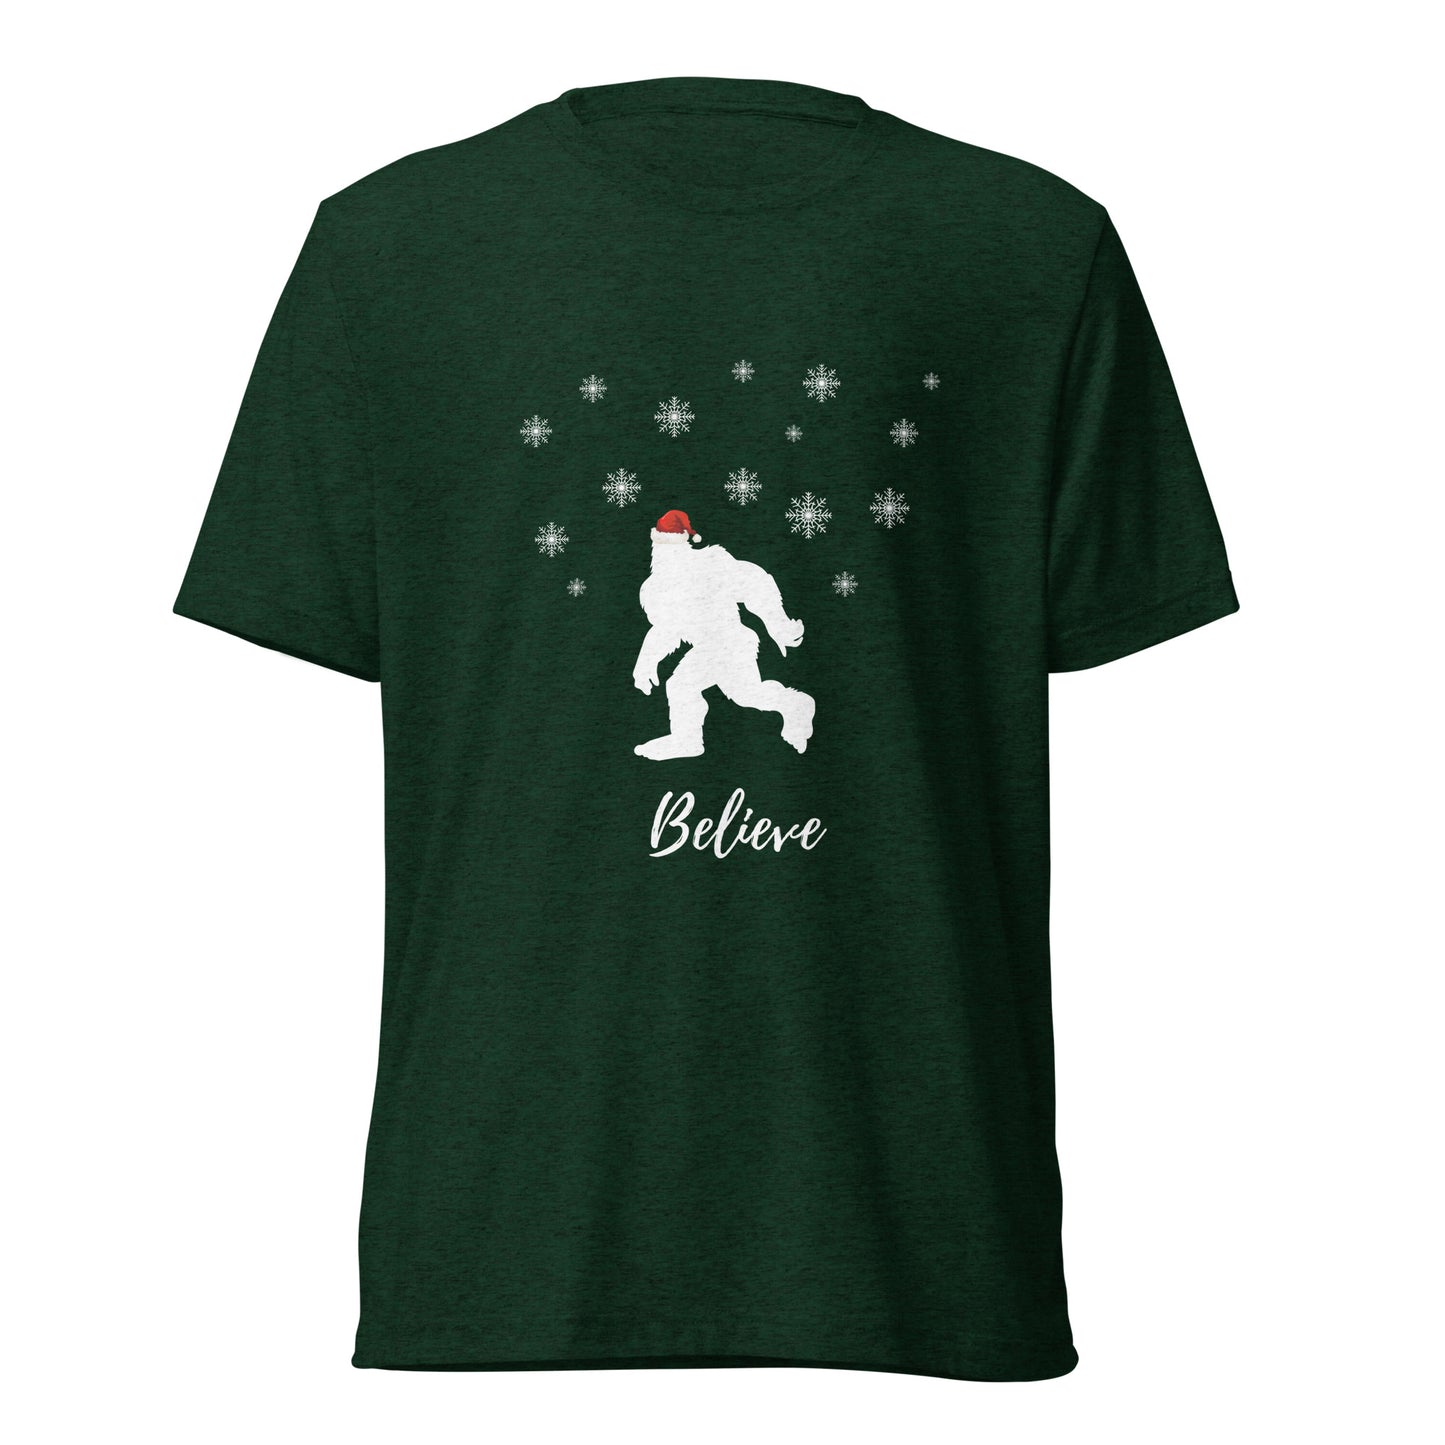 Bigfoot T-shirt